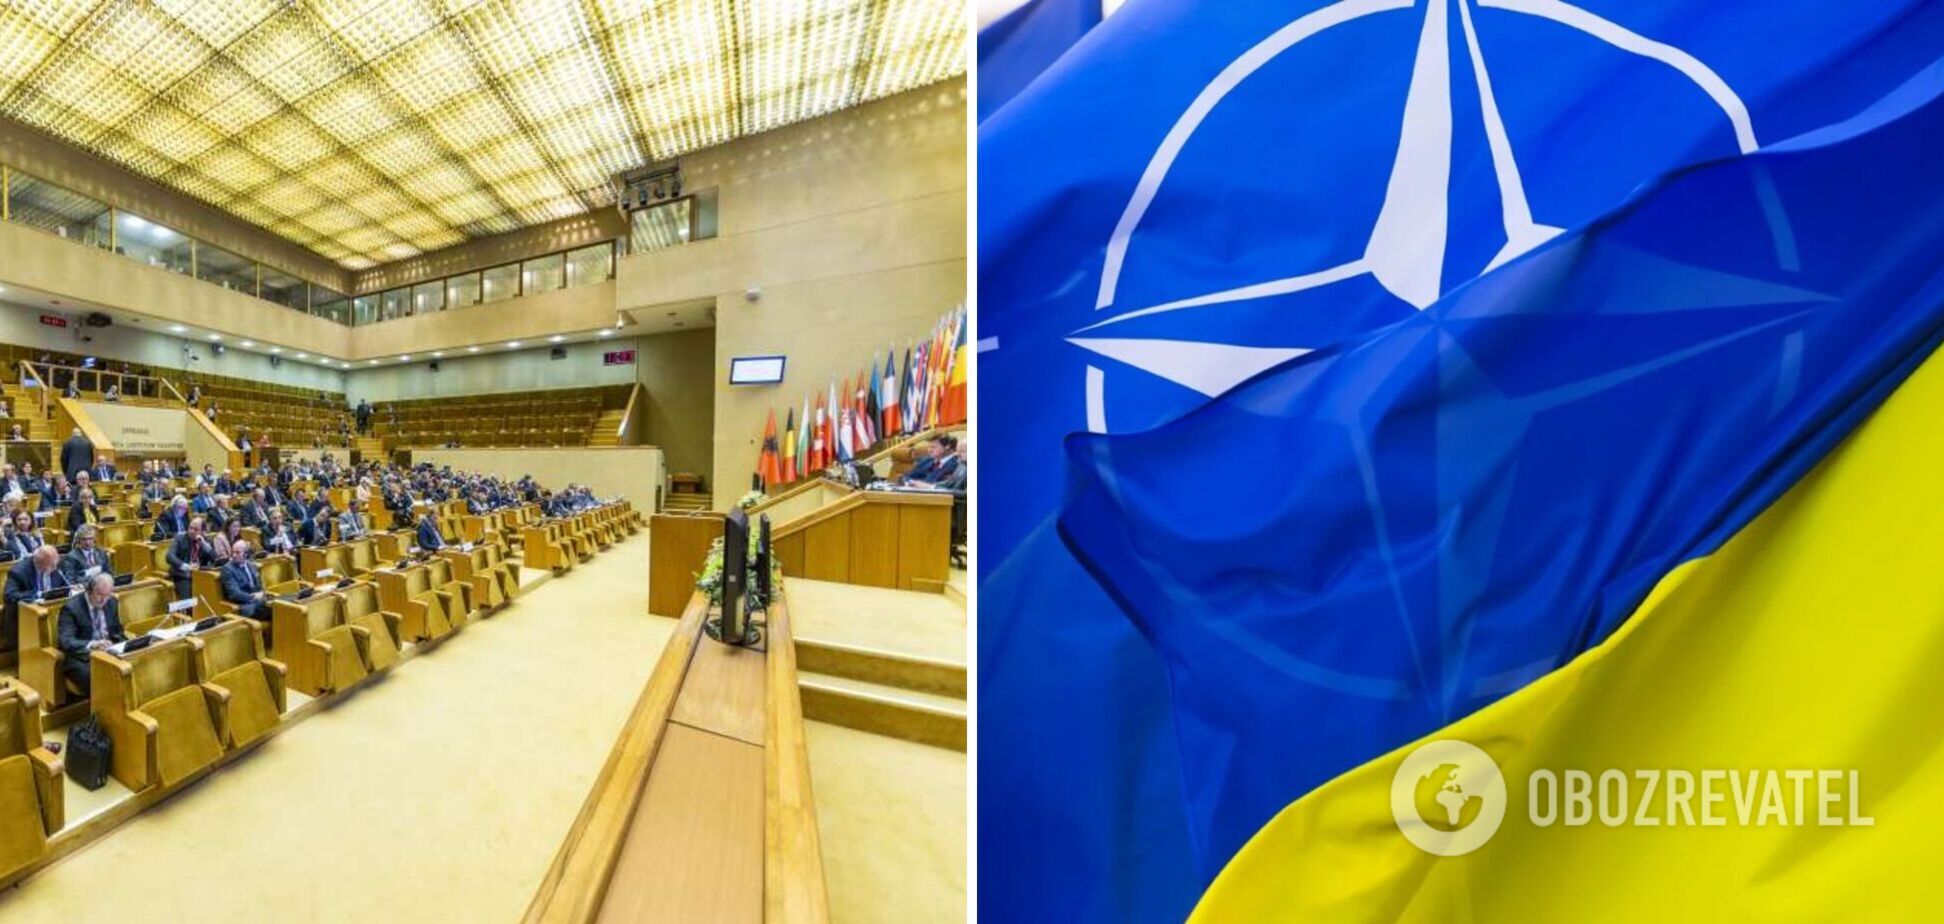 ПА НАТО ухвалила декларацію про підтримку євроатлантичного курсу України із закликом передати більше важкої зброї